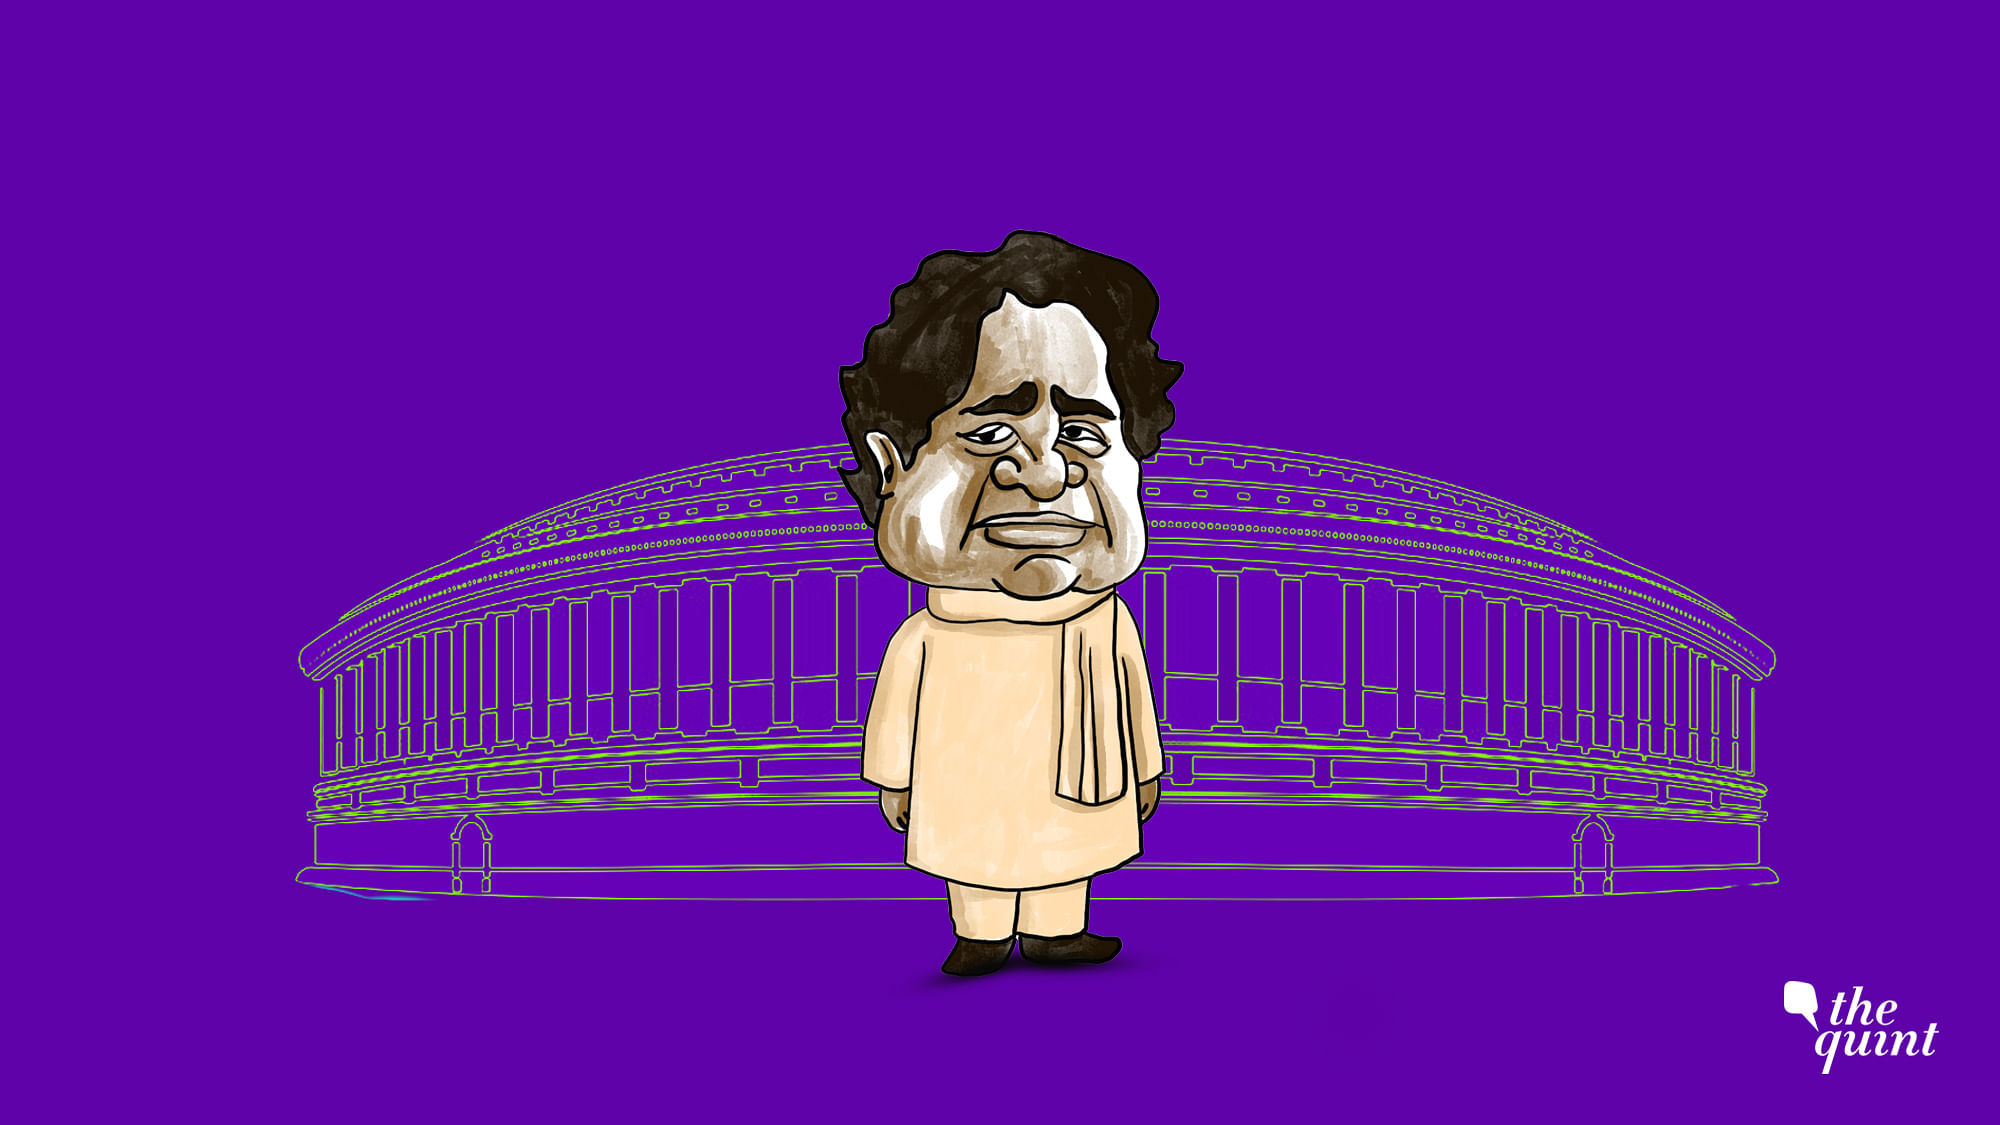 Image of Mayawati used for representational purposes.